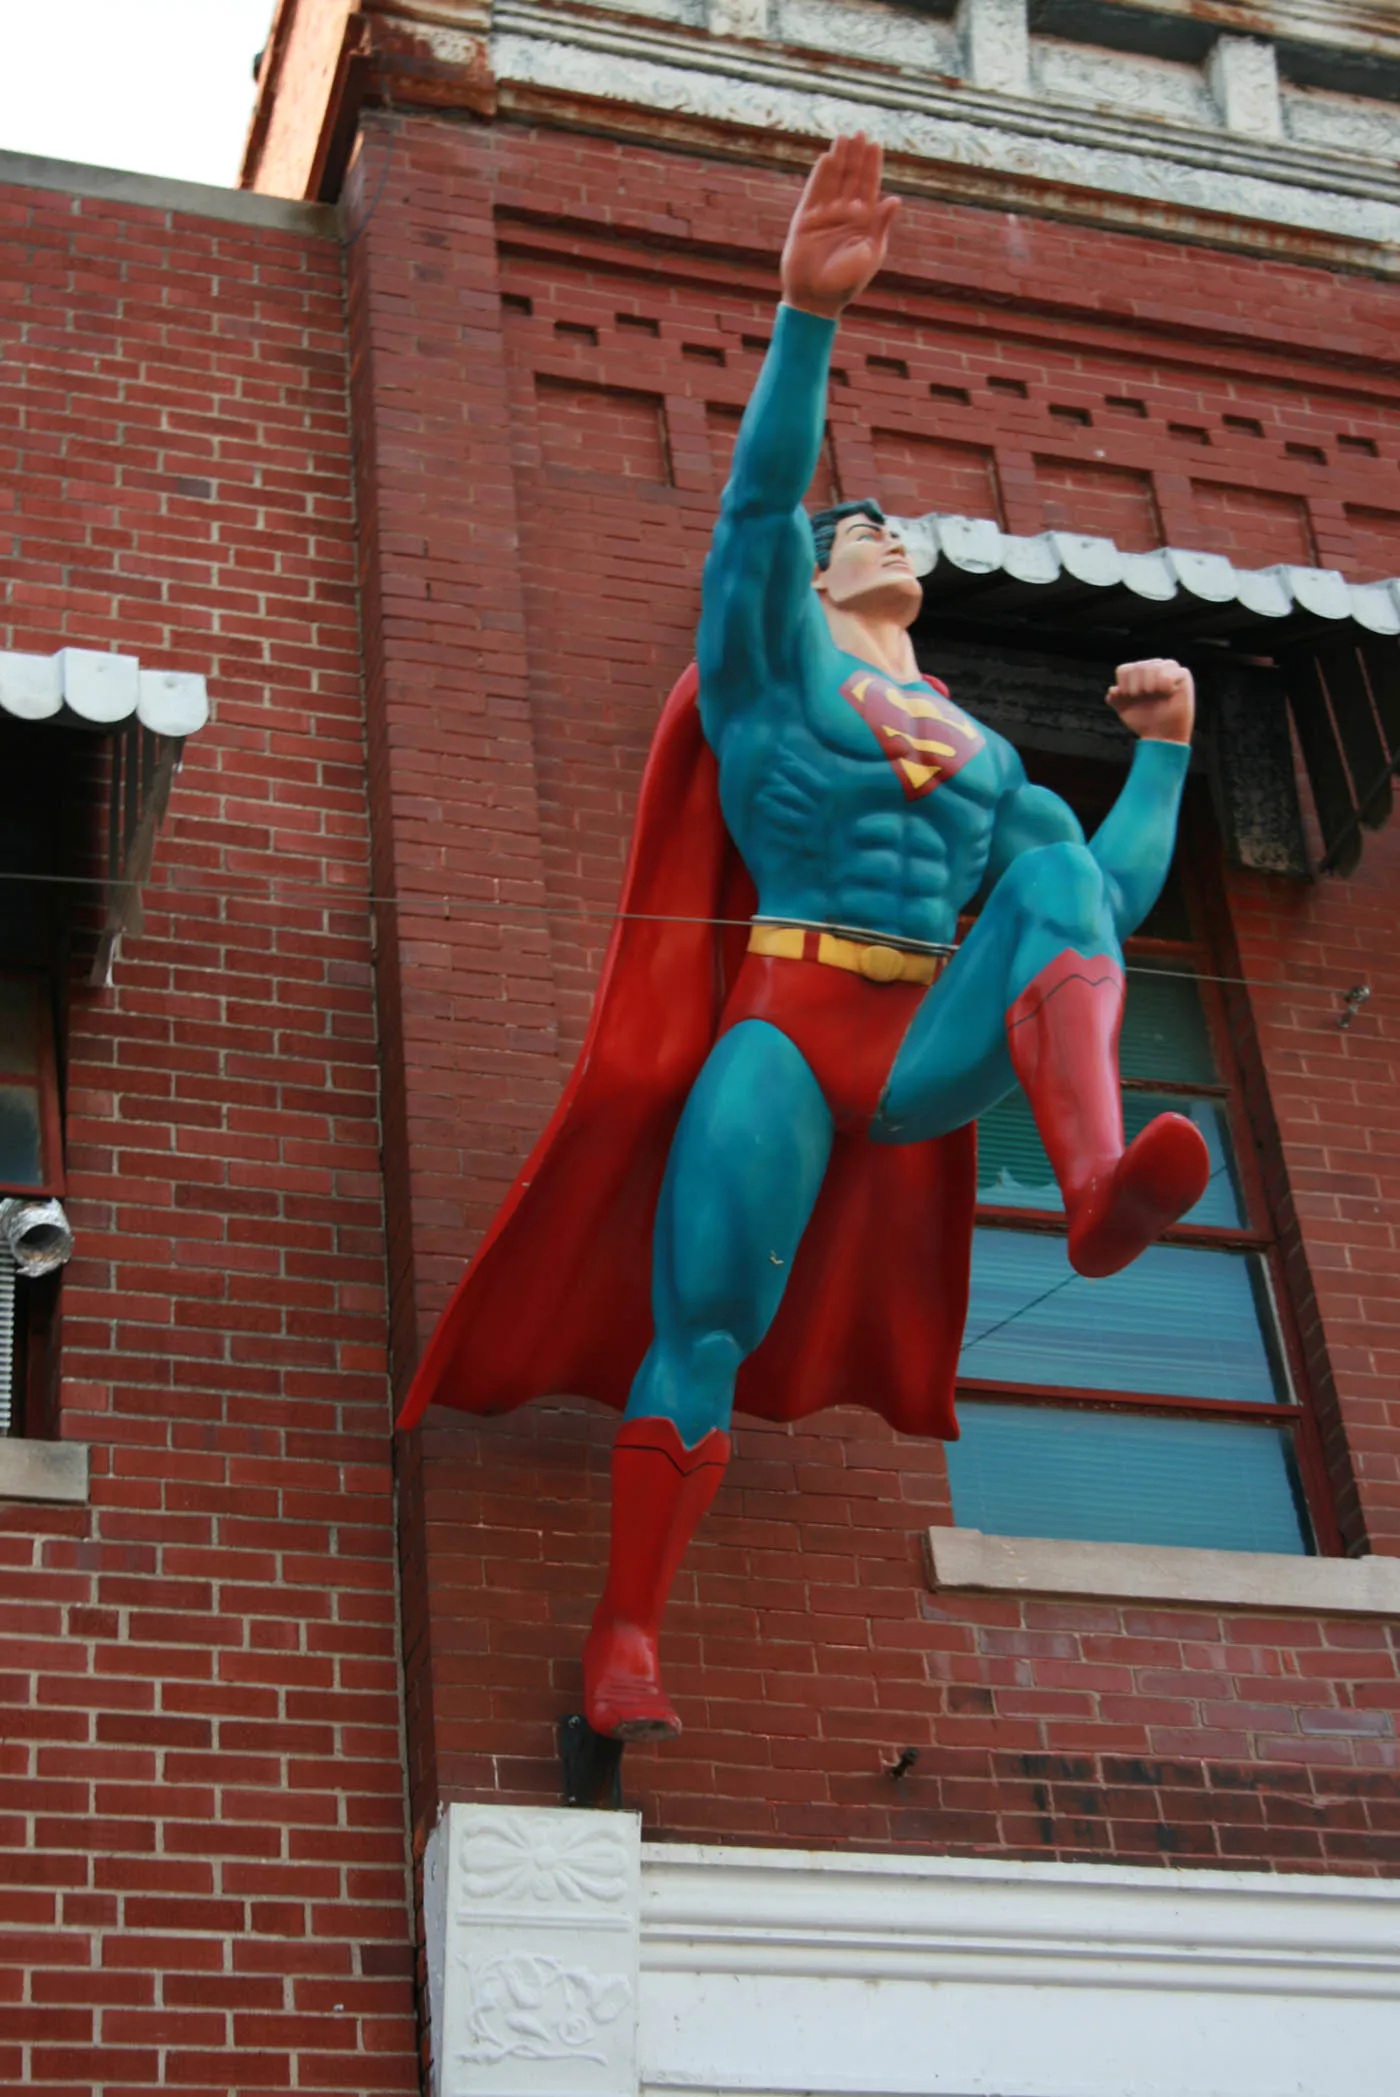 Superman statue in Superman Square in Metropolis, Illinois